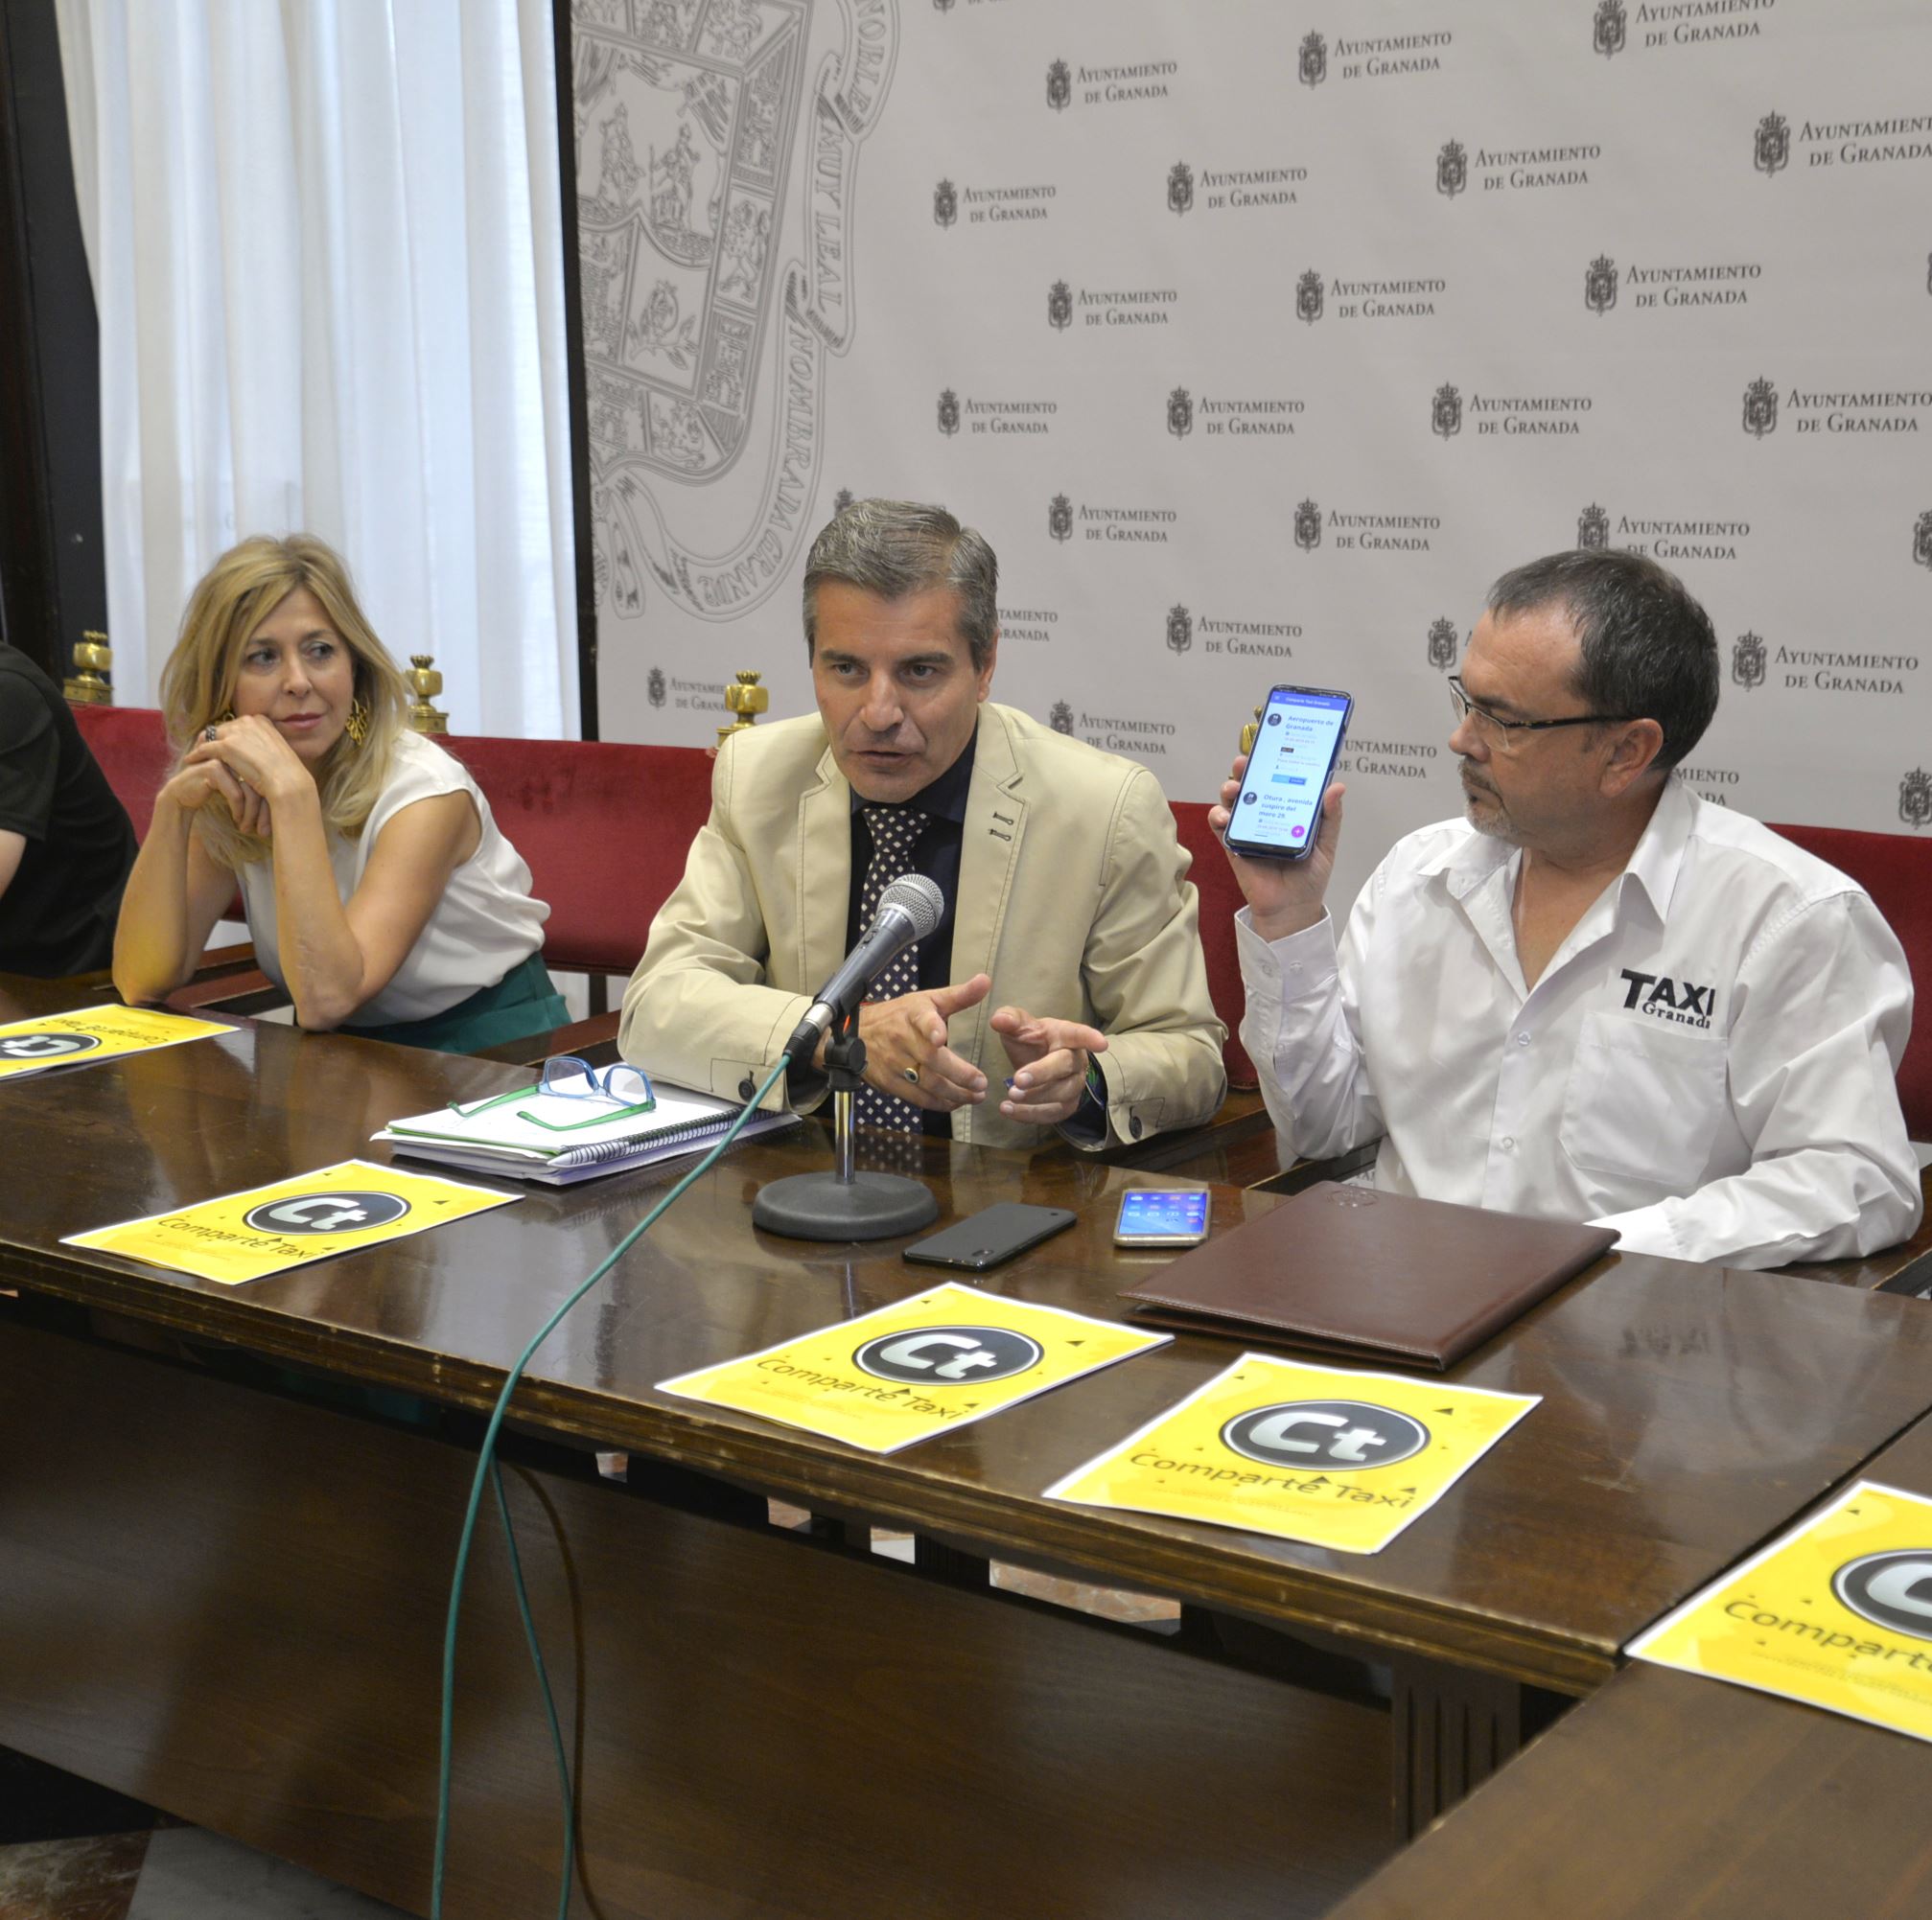 ©Ayto.Granada: Una aplicacin permitir a los usuarios del taxi de Granada compartir trayectos con un precio final cerrado 